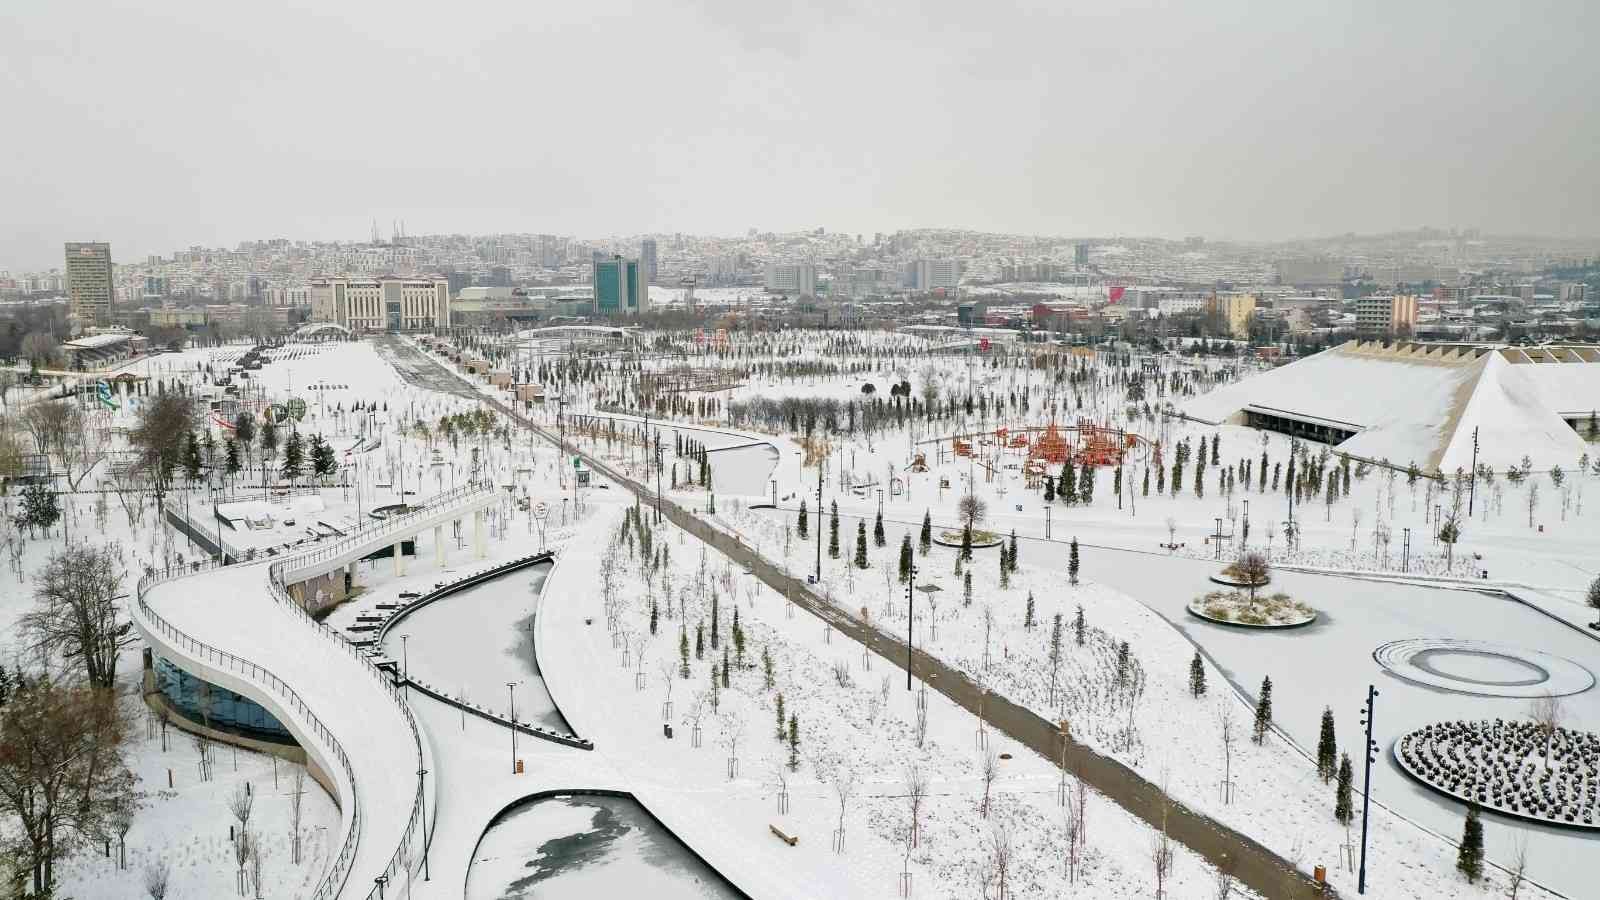 Kar Altındağ’a çok yakıştı #ankara